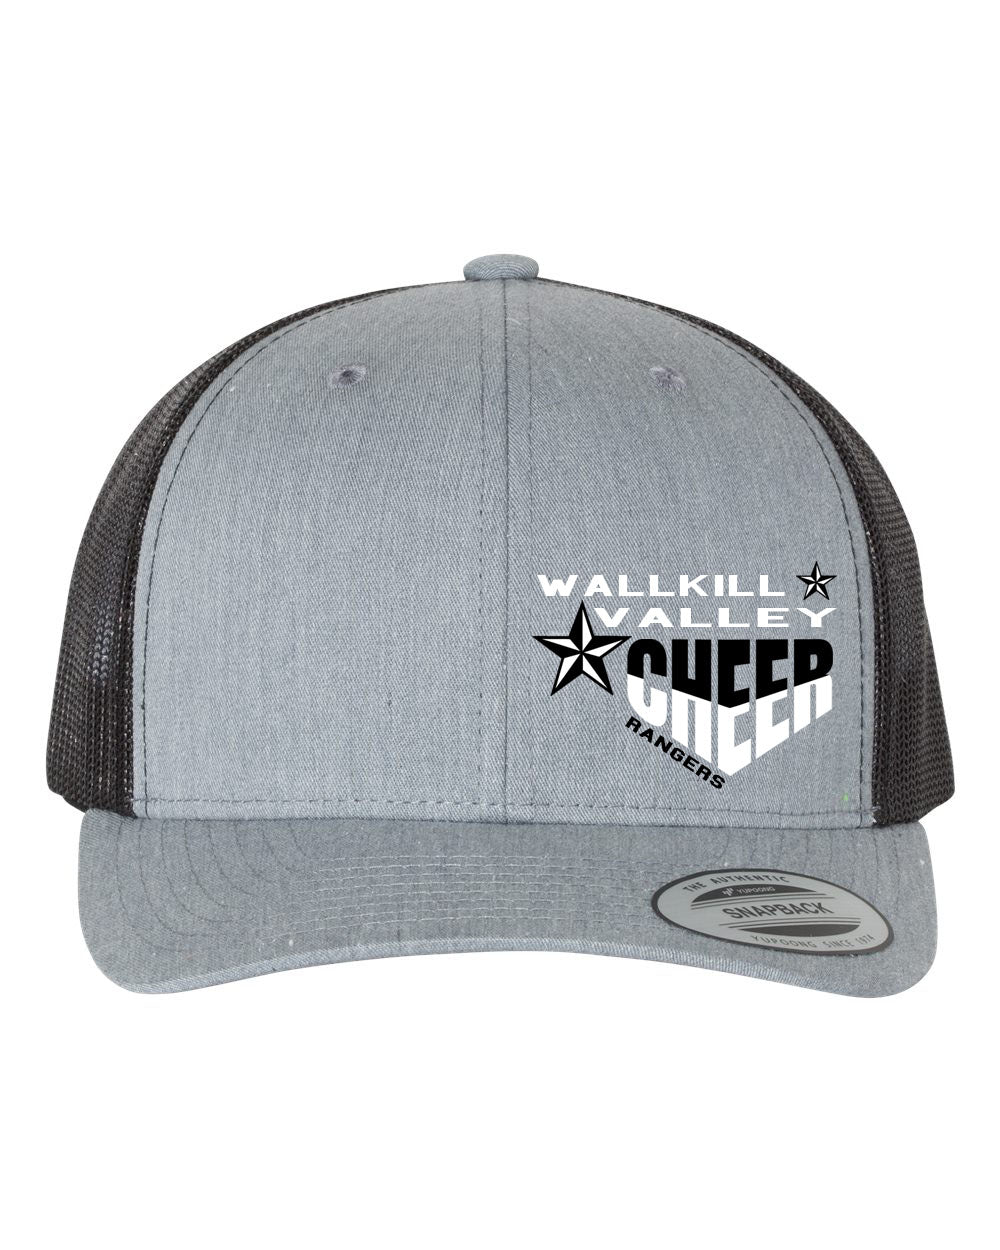 Wallkill Cheer design 5 Trucker Hat